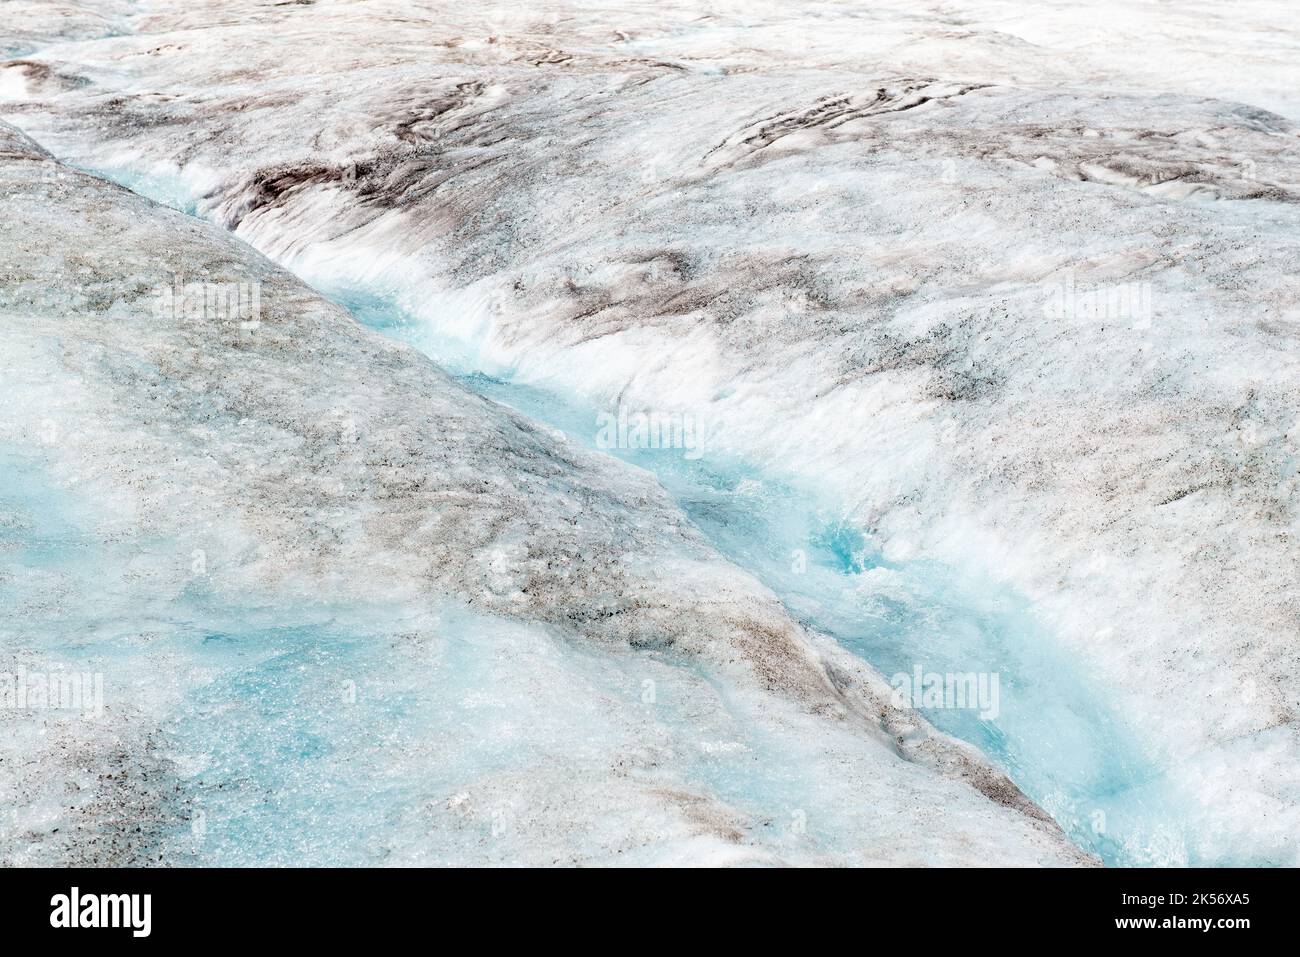 Derretimiento del glaciar Athabasca con un pequeño río en el hielo debido al cambio climático, parque nacional Jasper, Alberta, Canadá. Foto de stock